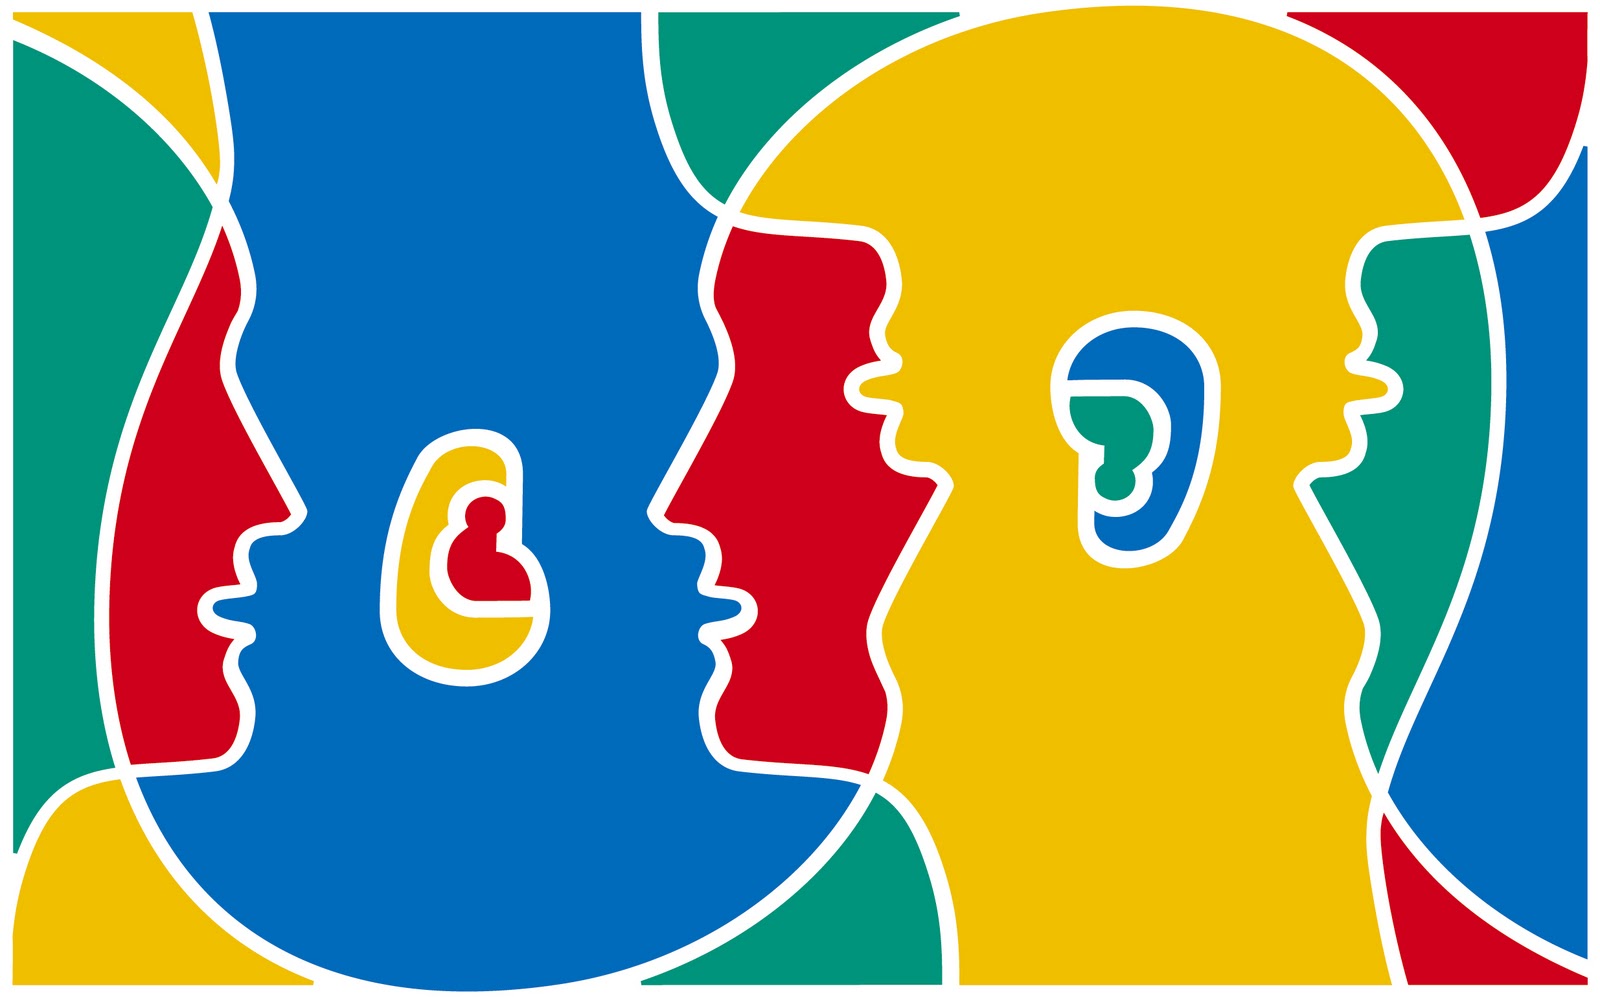 Multilingüismo: Valenciano, castellano, inglés… ¿por qué no